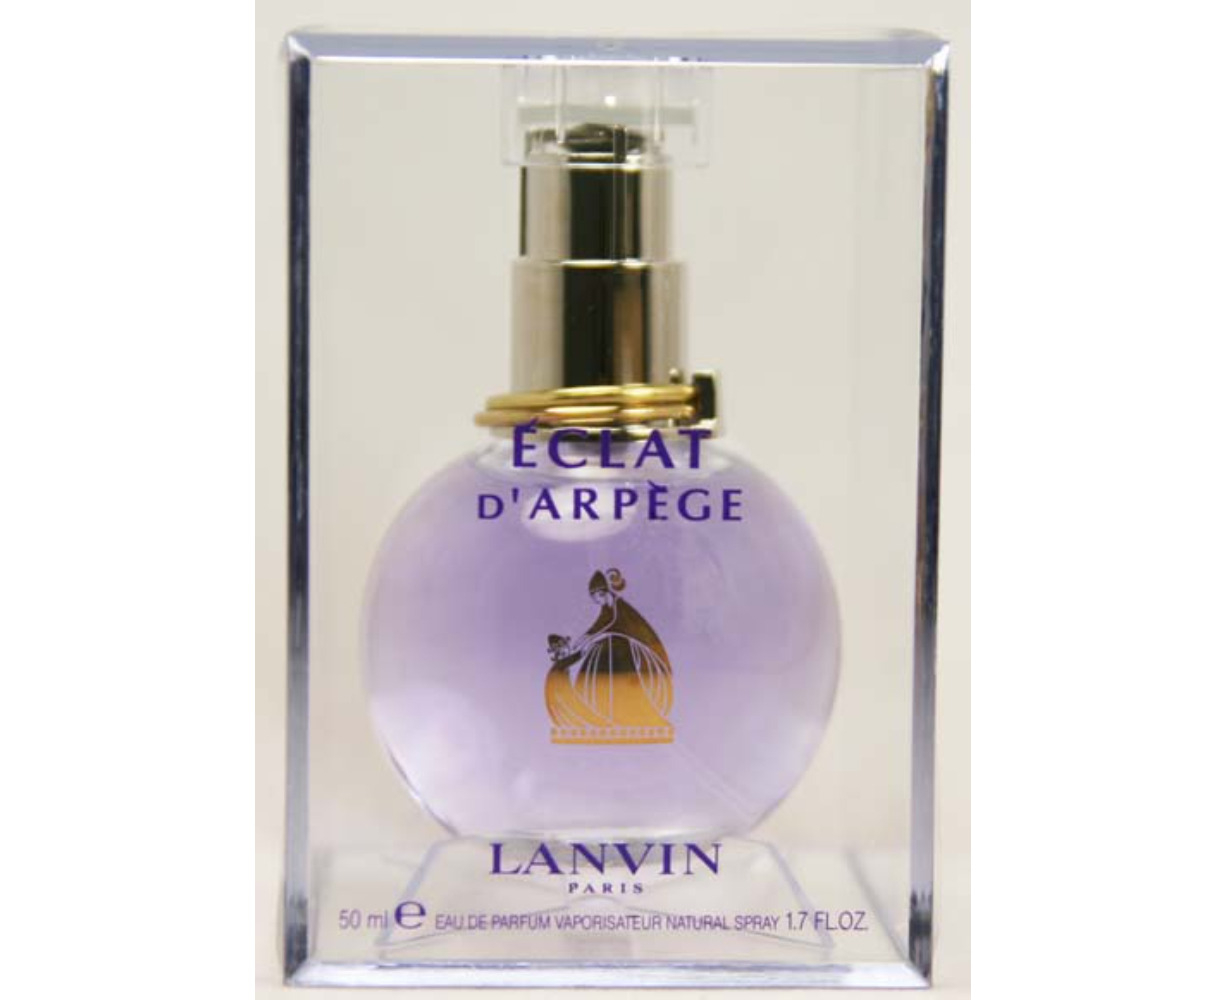  Lanvin Eclat Darpege By Lanvin for Women, 1.7 Fl Oz